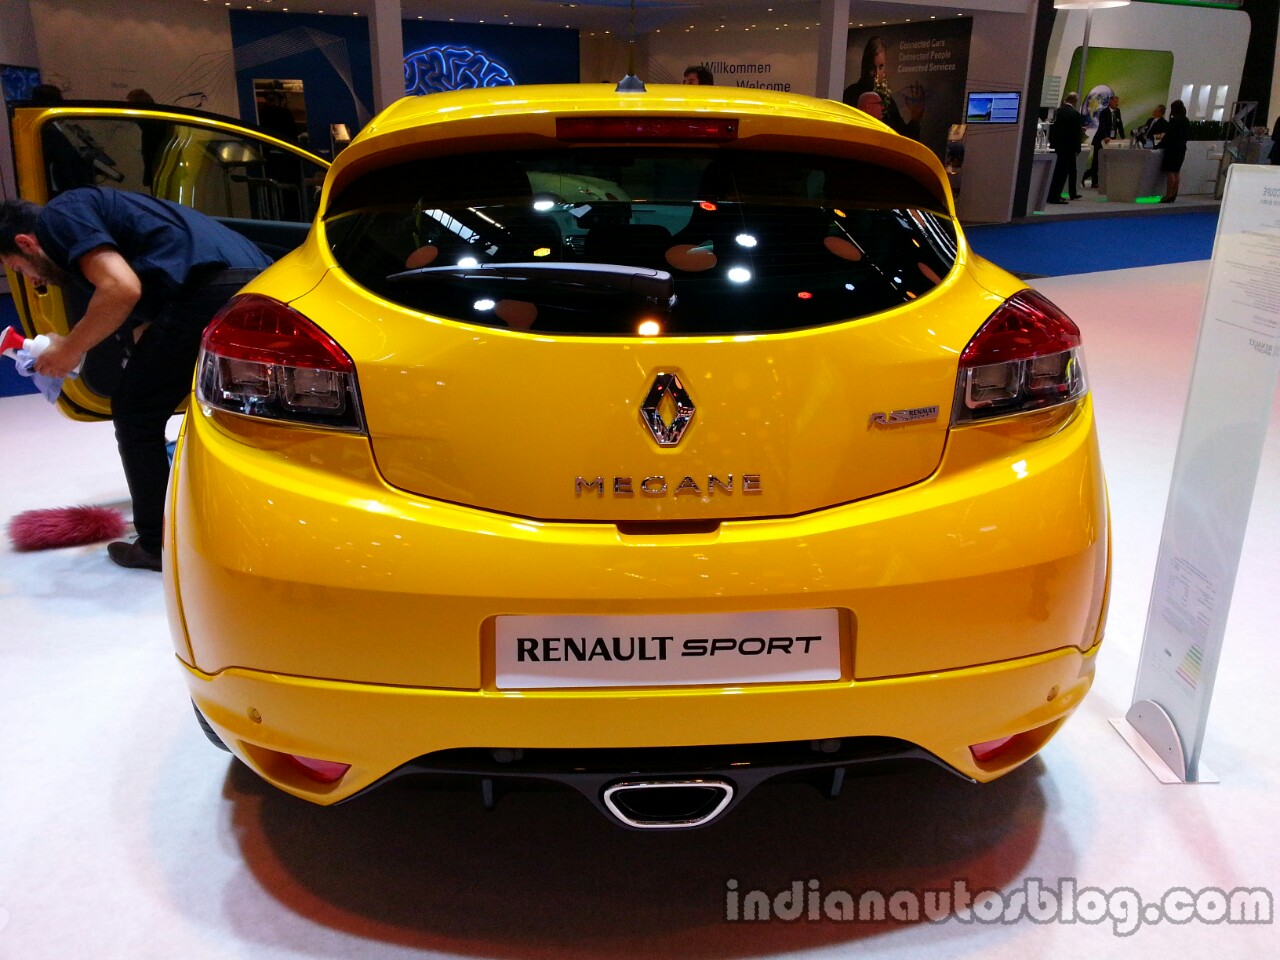 2014 Renault Mégane RS Backgrounds, Compatible - PC, Mobile, Gadgets| 1280x960 px